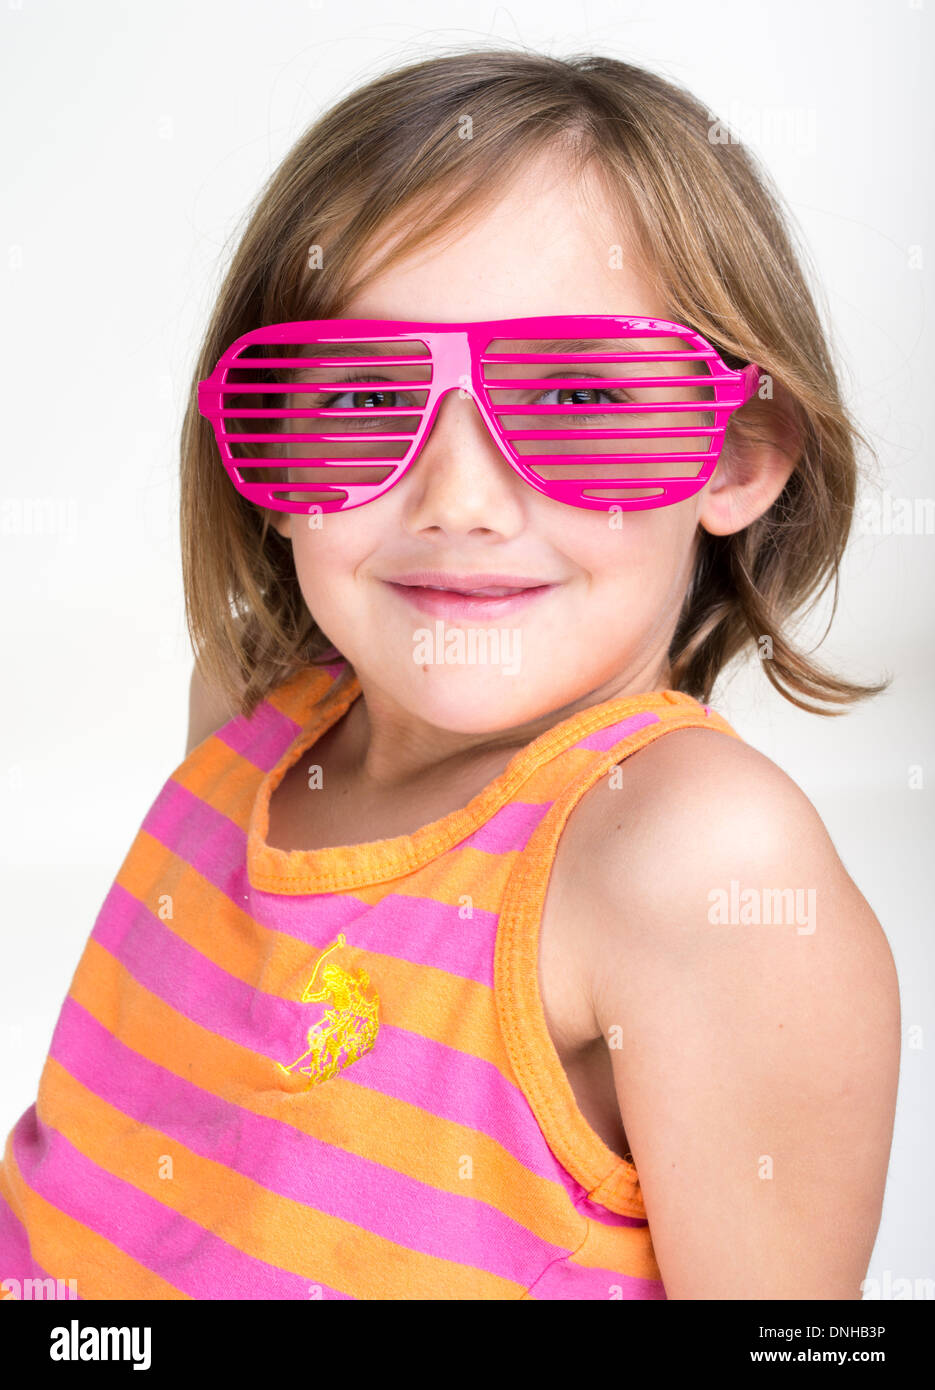 Jeune fille portant des lunettes d'obturation rose Banque D'Images